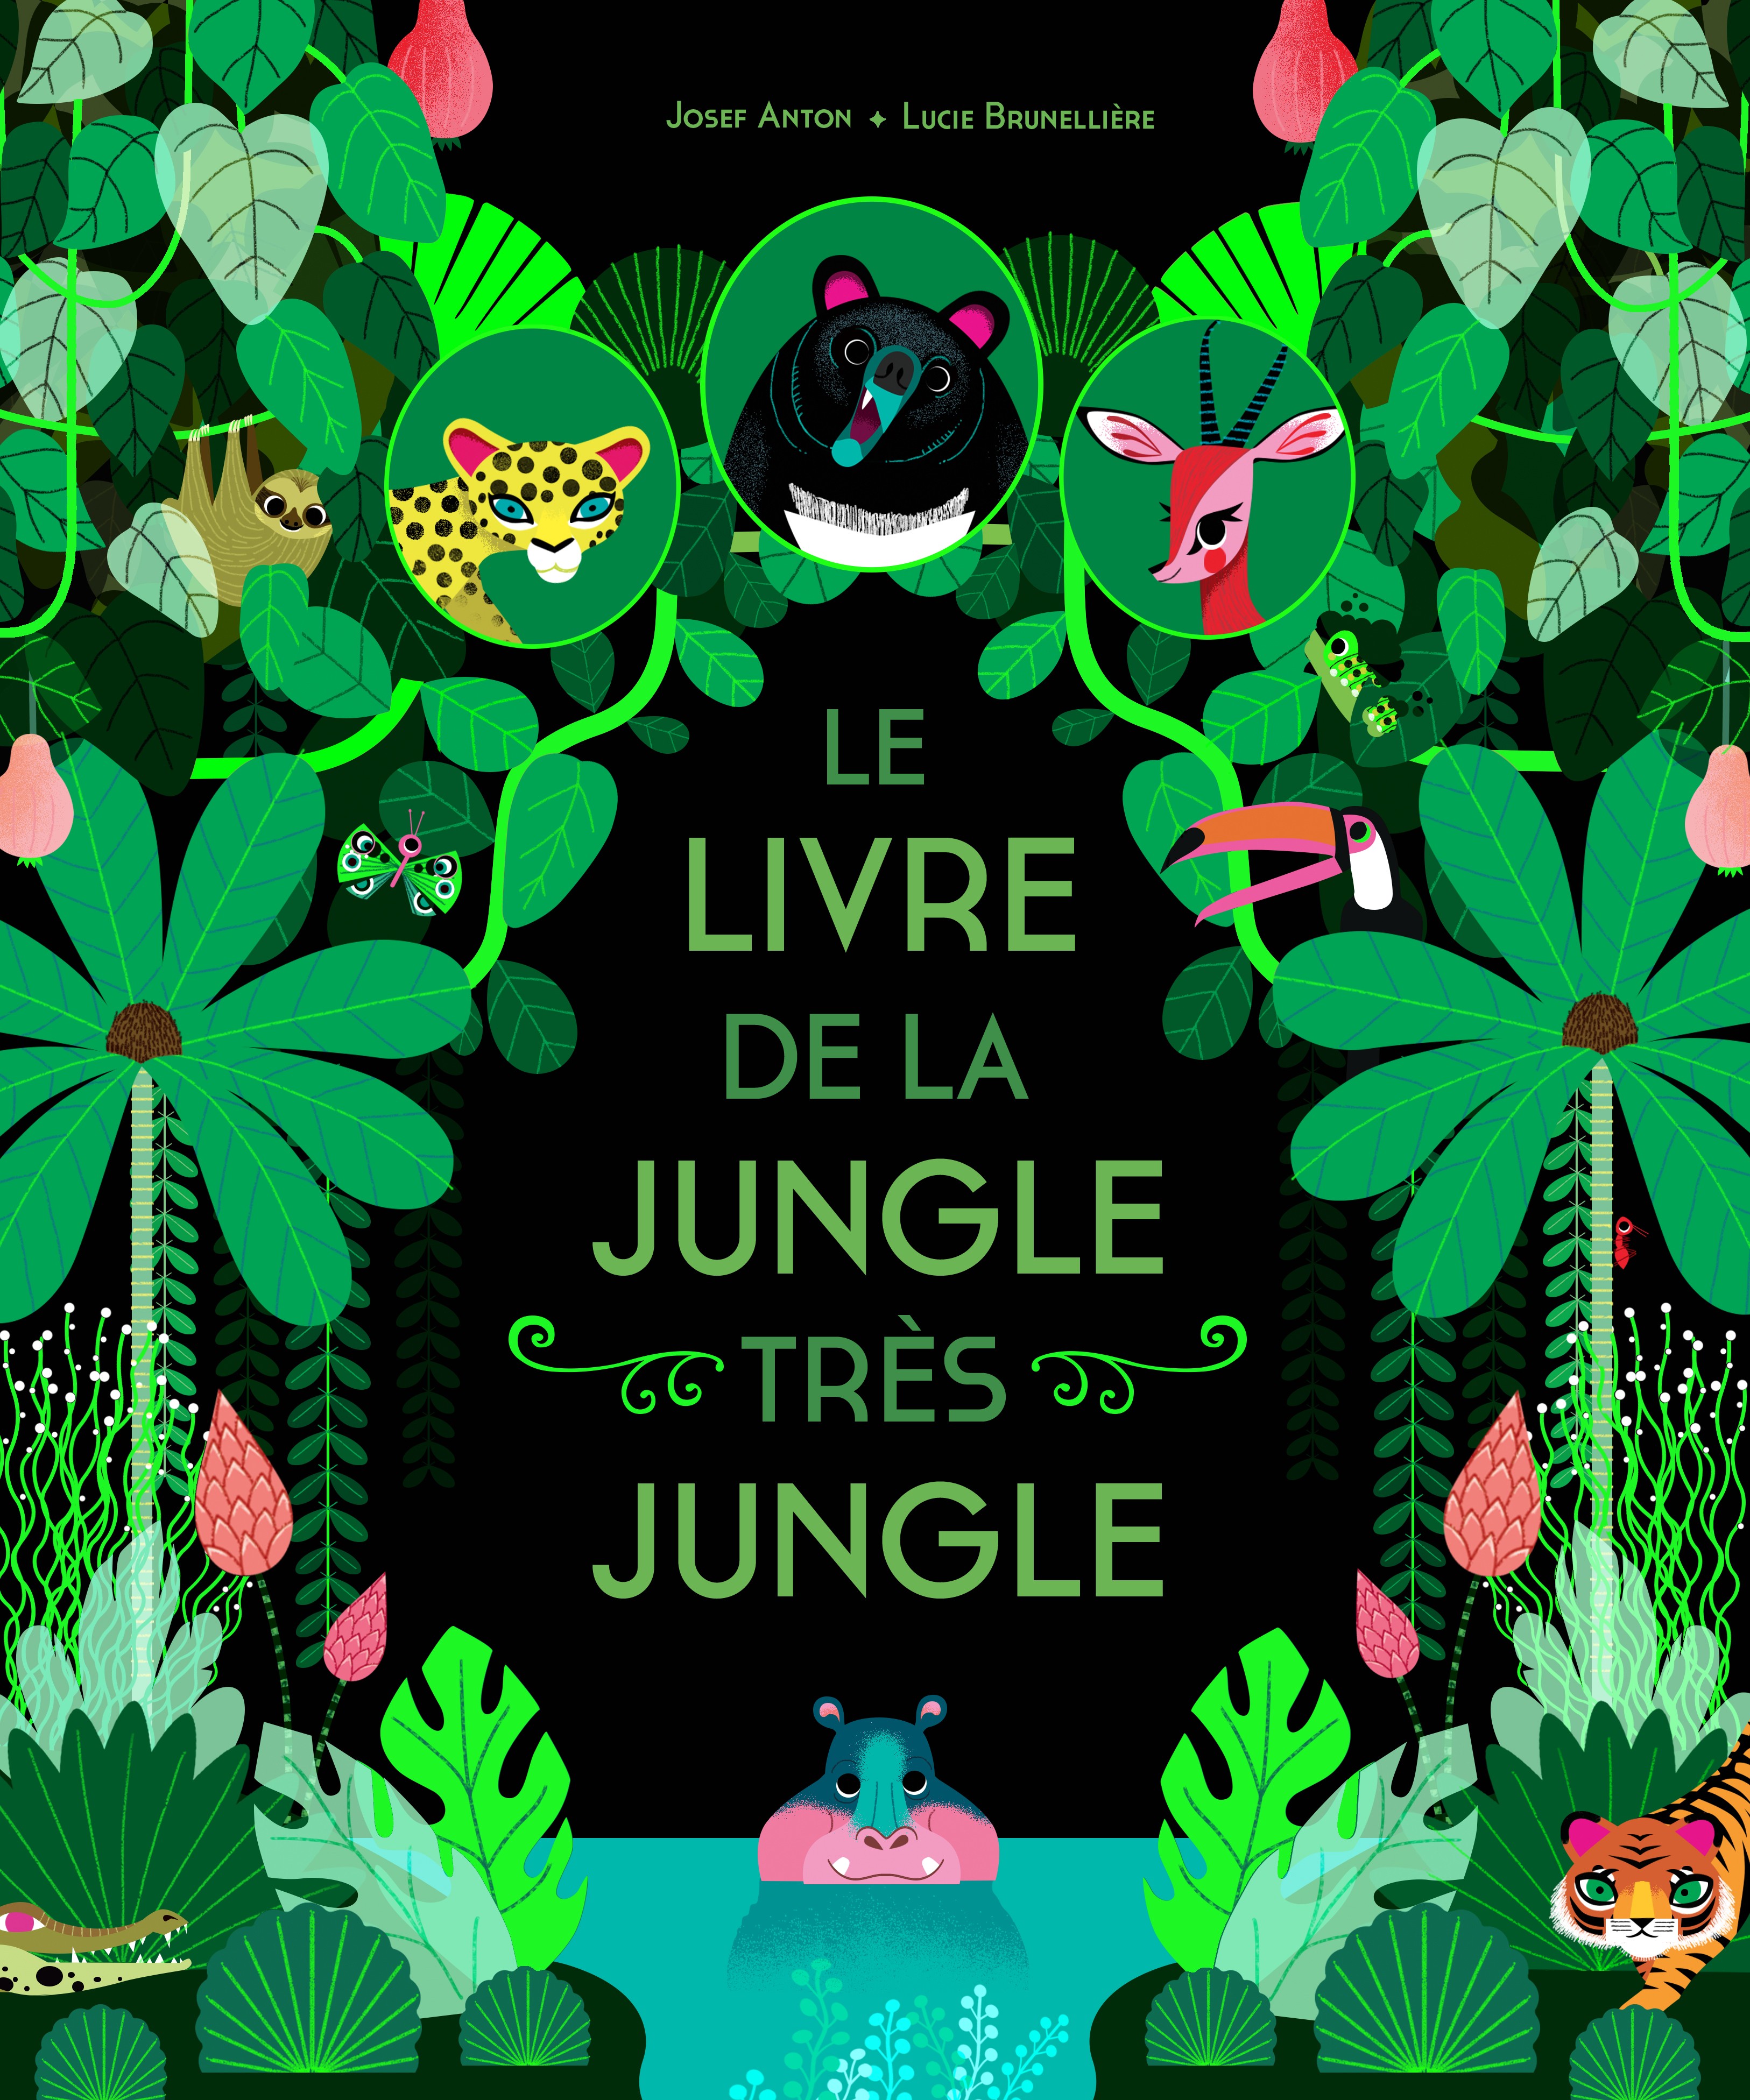 Couverture du livre Le Livre de la jungle très jungle